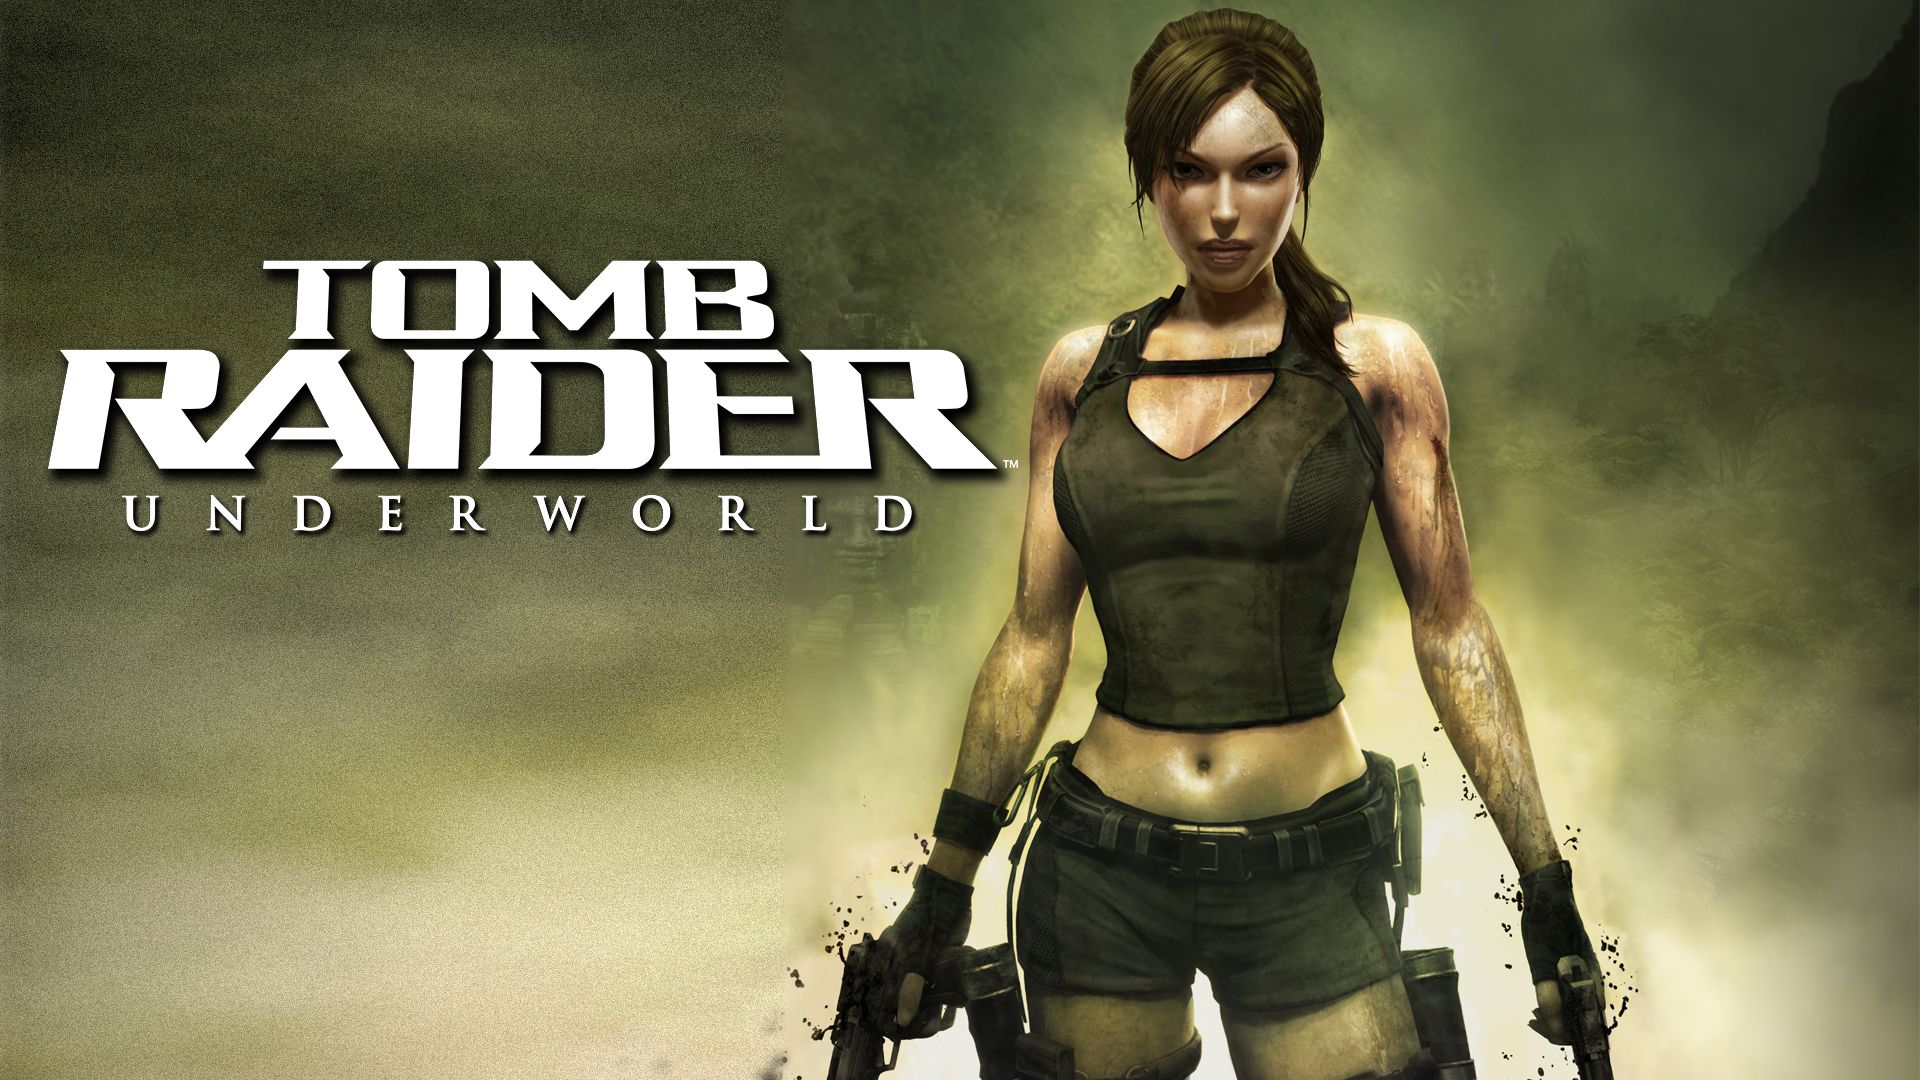 Прохождение игры Tomb Raider: Underworld # 7. HD - Full 1080p. (Русская версия игры)